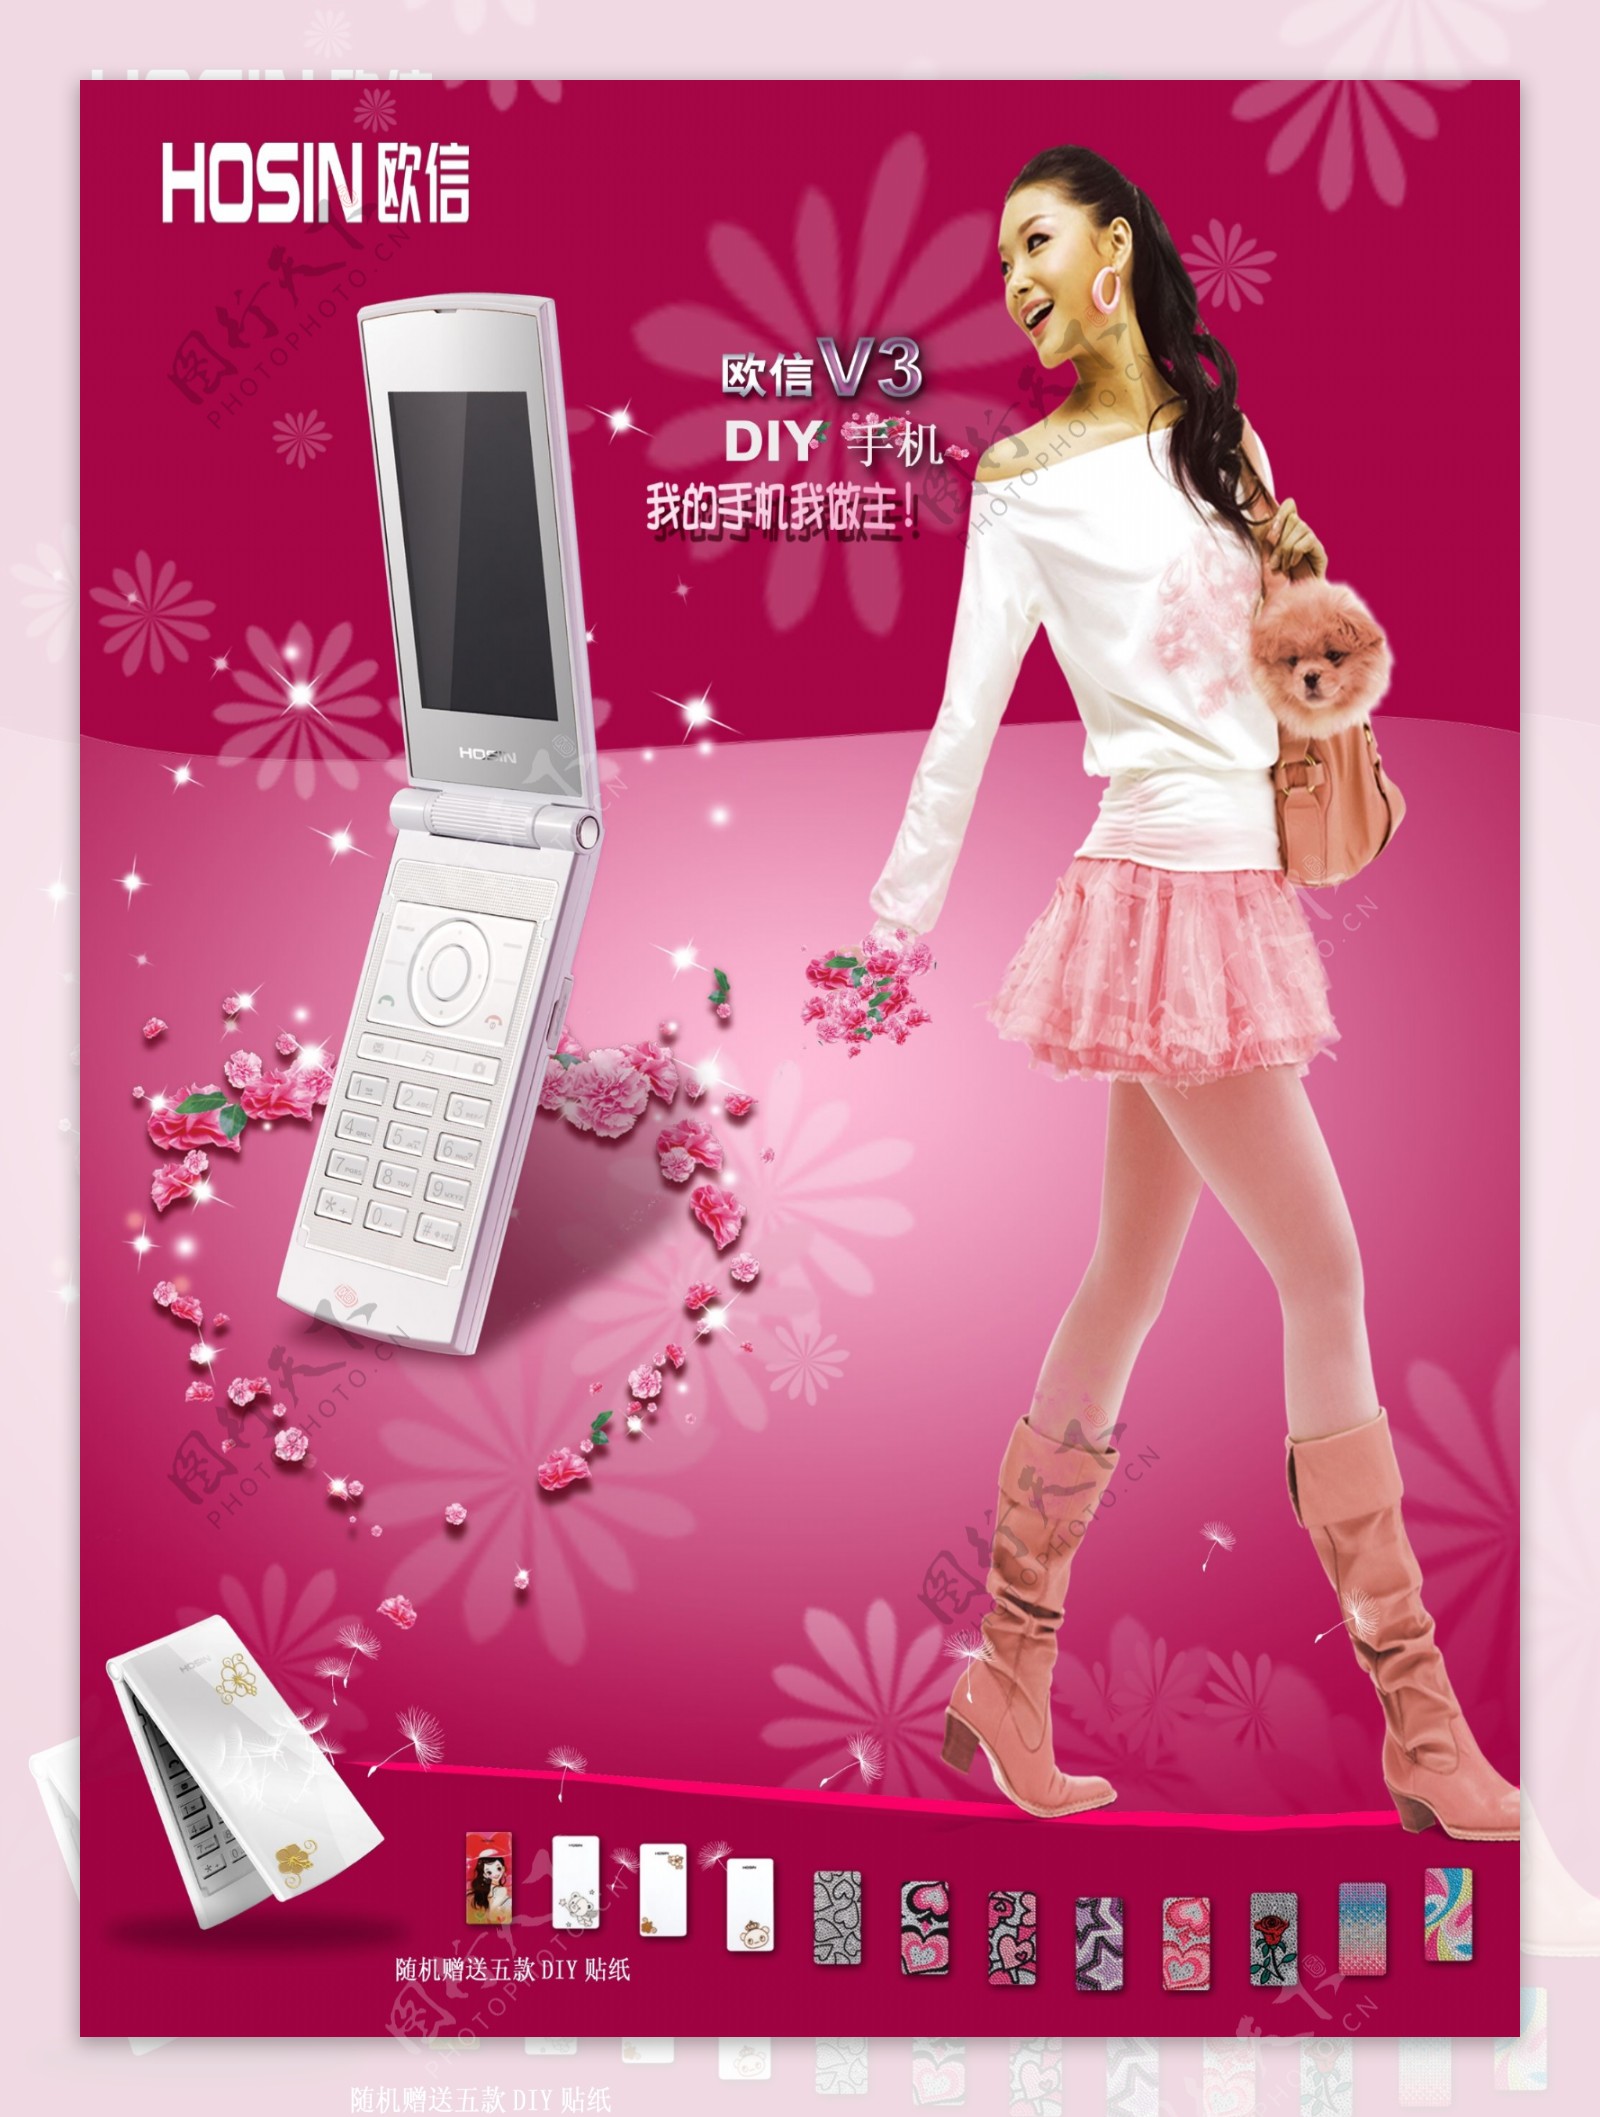 欧信V3时尚手机宣传广告素材